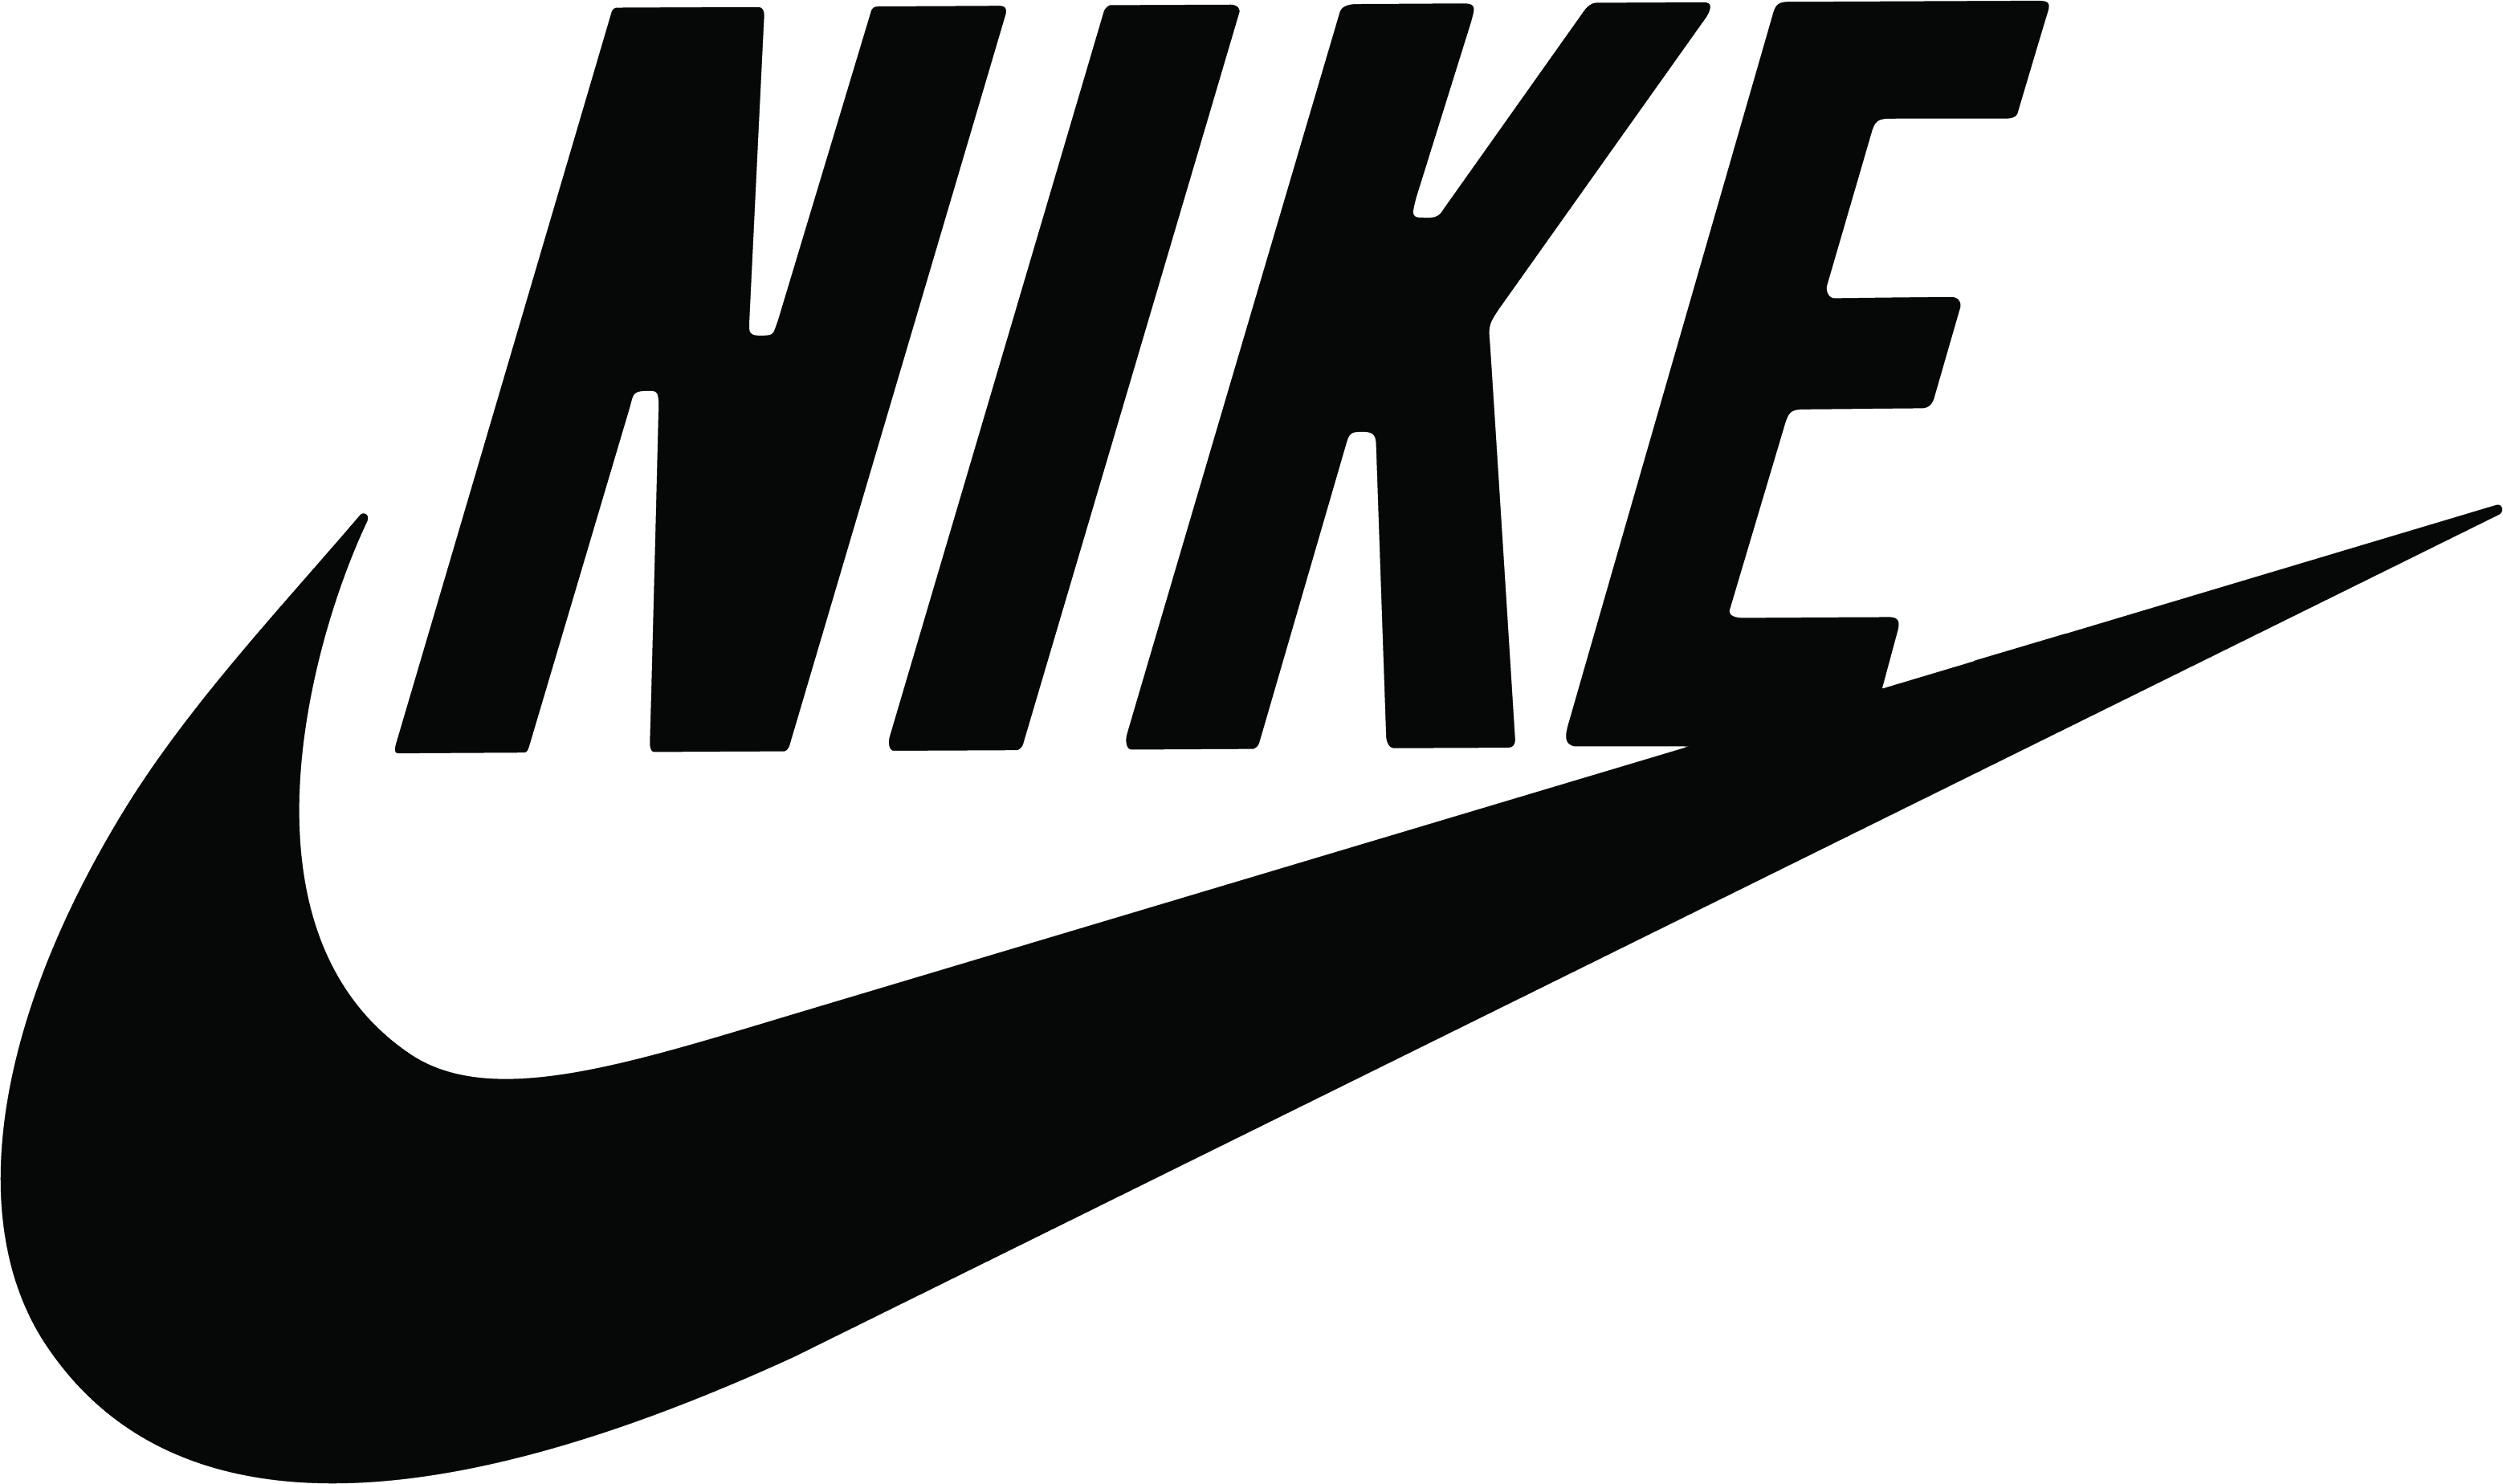 Nike Logo - Nike logo PNG images free download